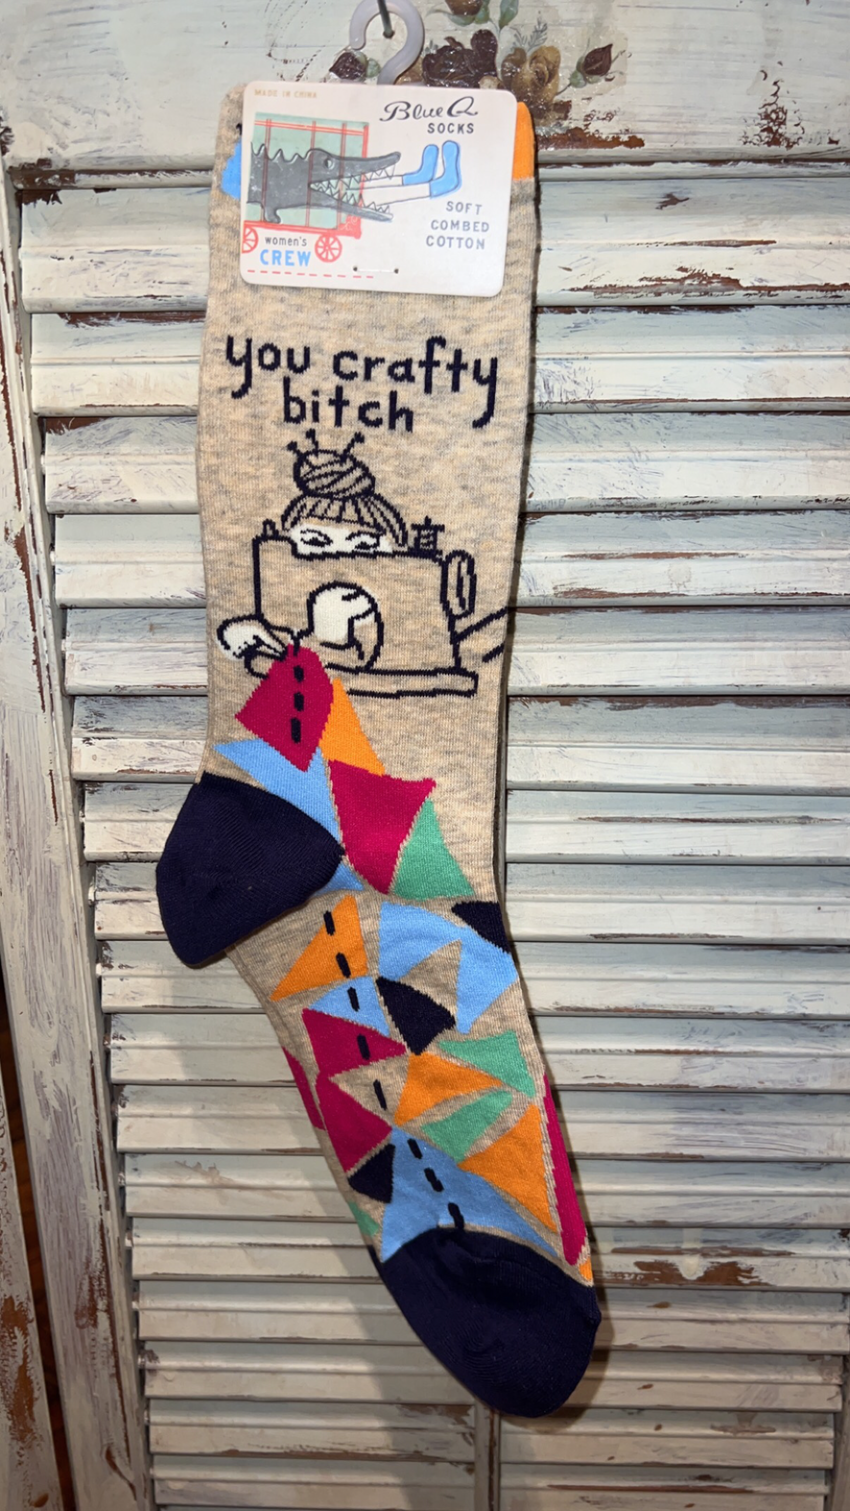 Crafty socks